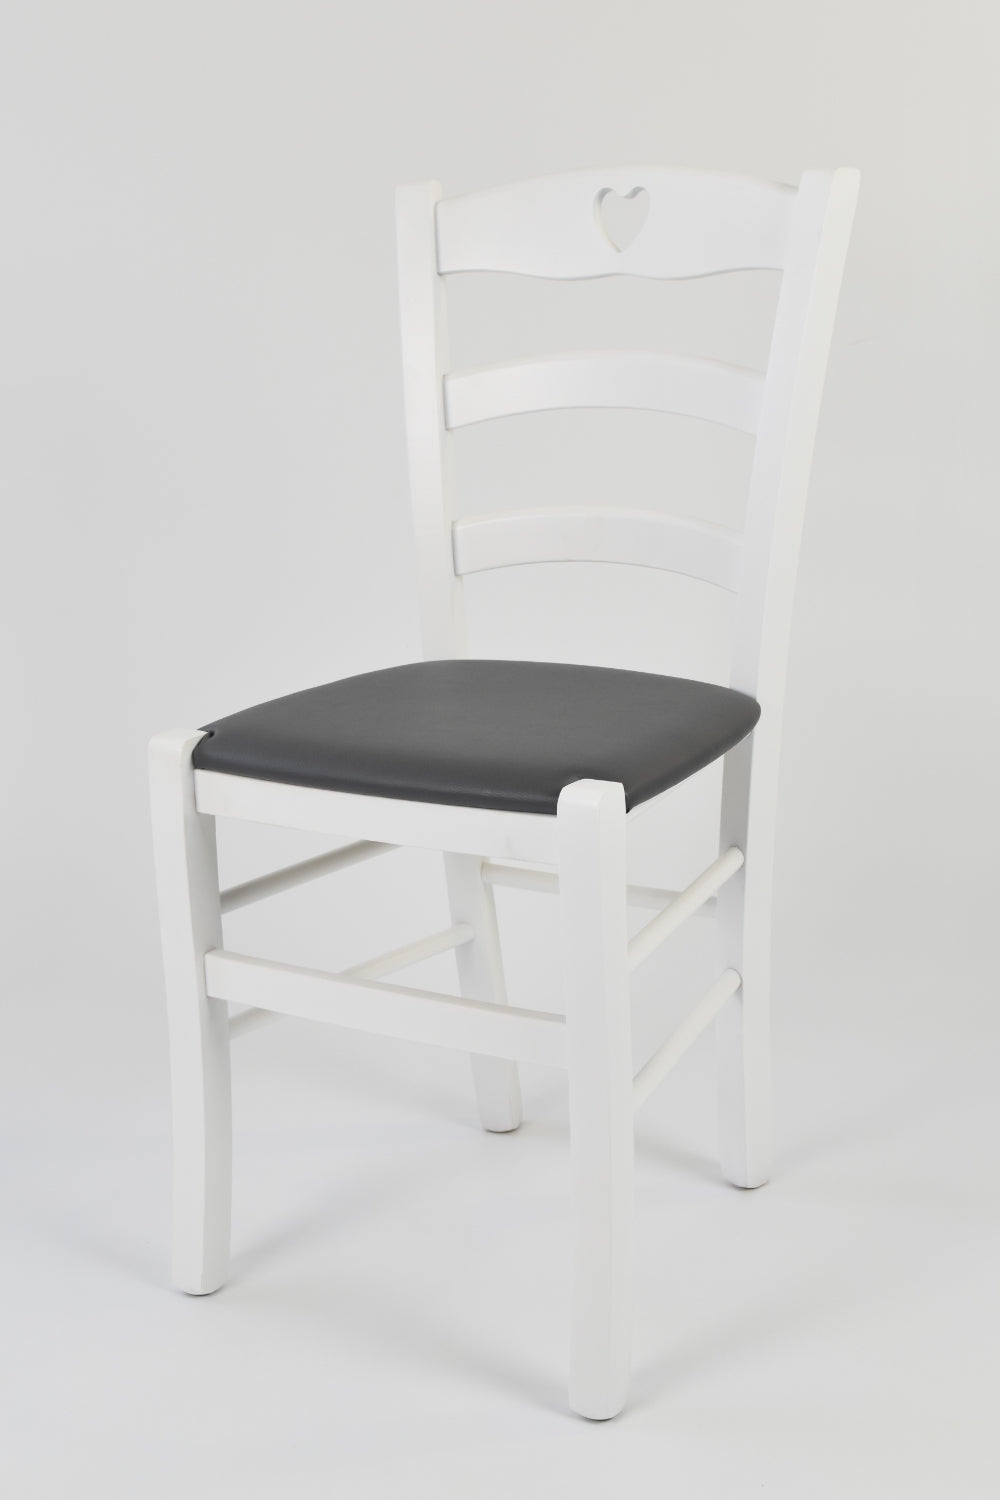 Tommychairs - Set 4 sillas de Cocina y Comedor Cuore, Estructura en Madera de Haya barnizada Color Blanco y Asiento tapizado en Polipiel Gris Oscuro